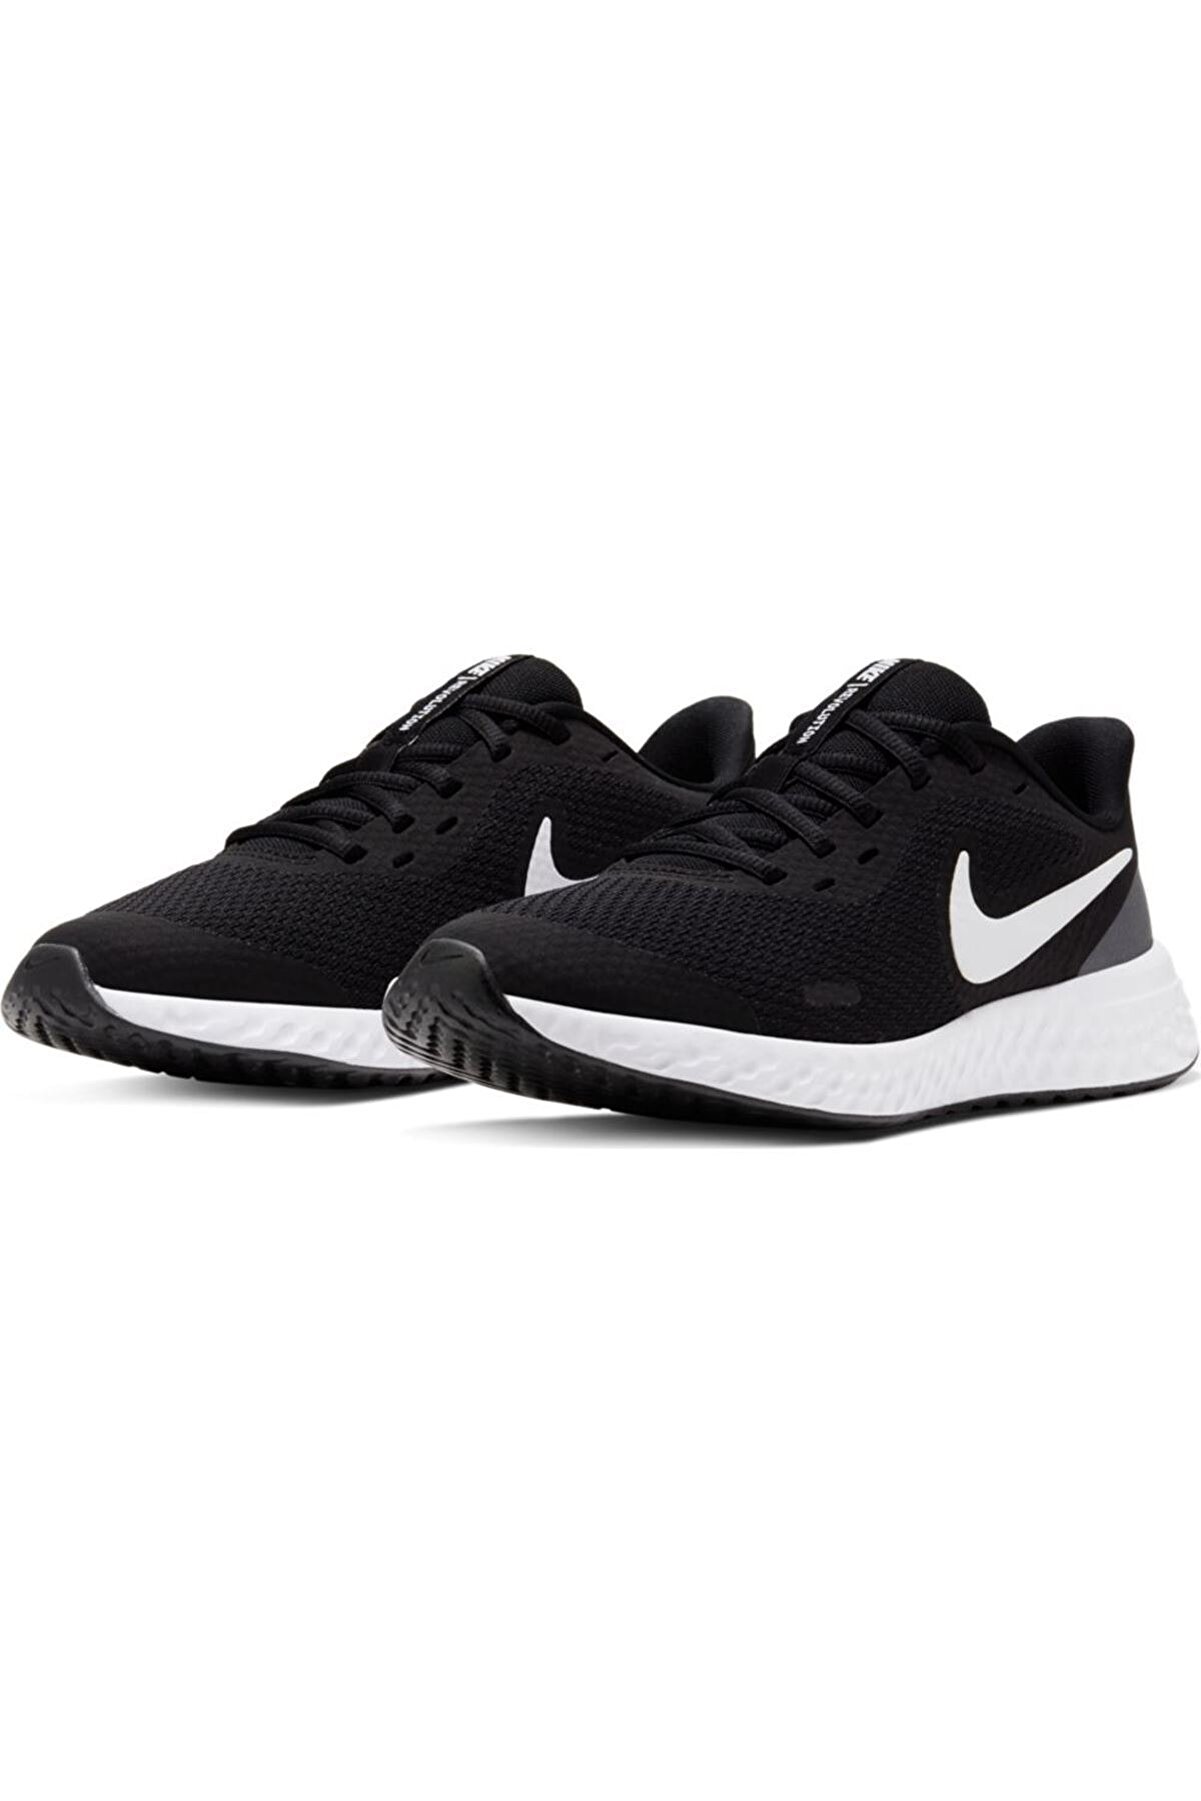 Nike Kadın Siyah Bağcıklı Yürüyüş Ayakkabısı Bq5671-003